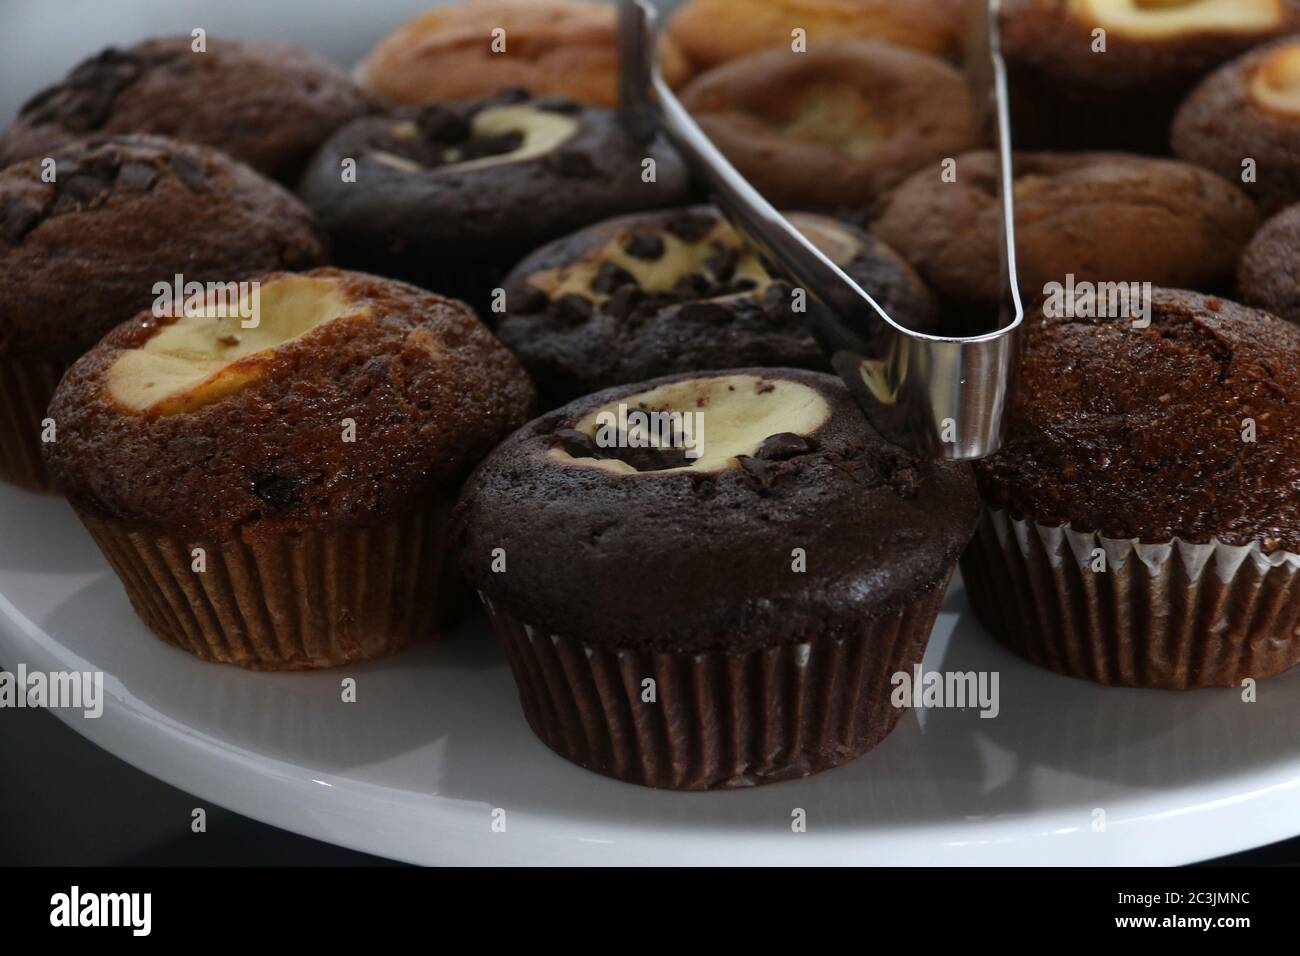 Assortiment de copeaux de chocolat, chocolat en marbre et muffins aux pommes sur un plateau à gâteau Banque D'Images